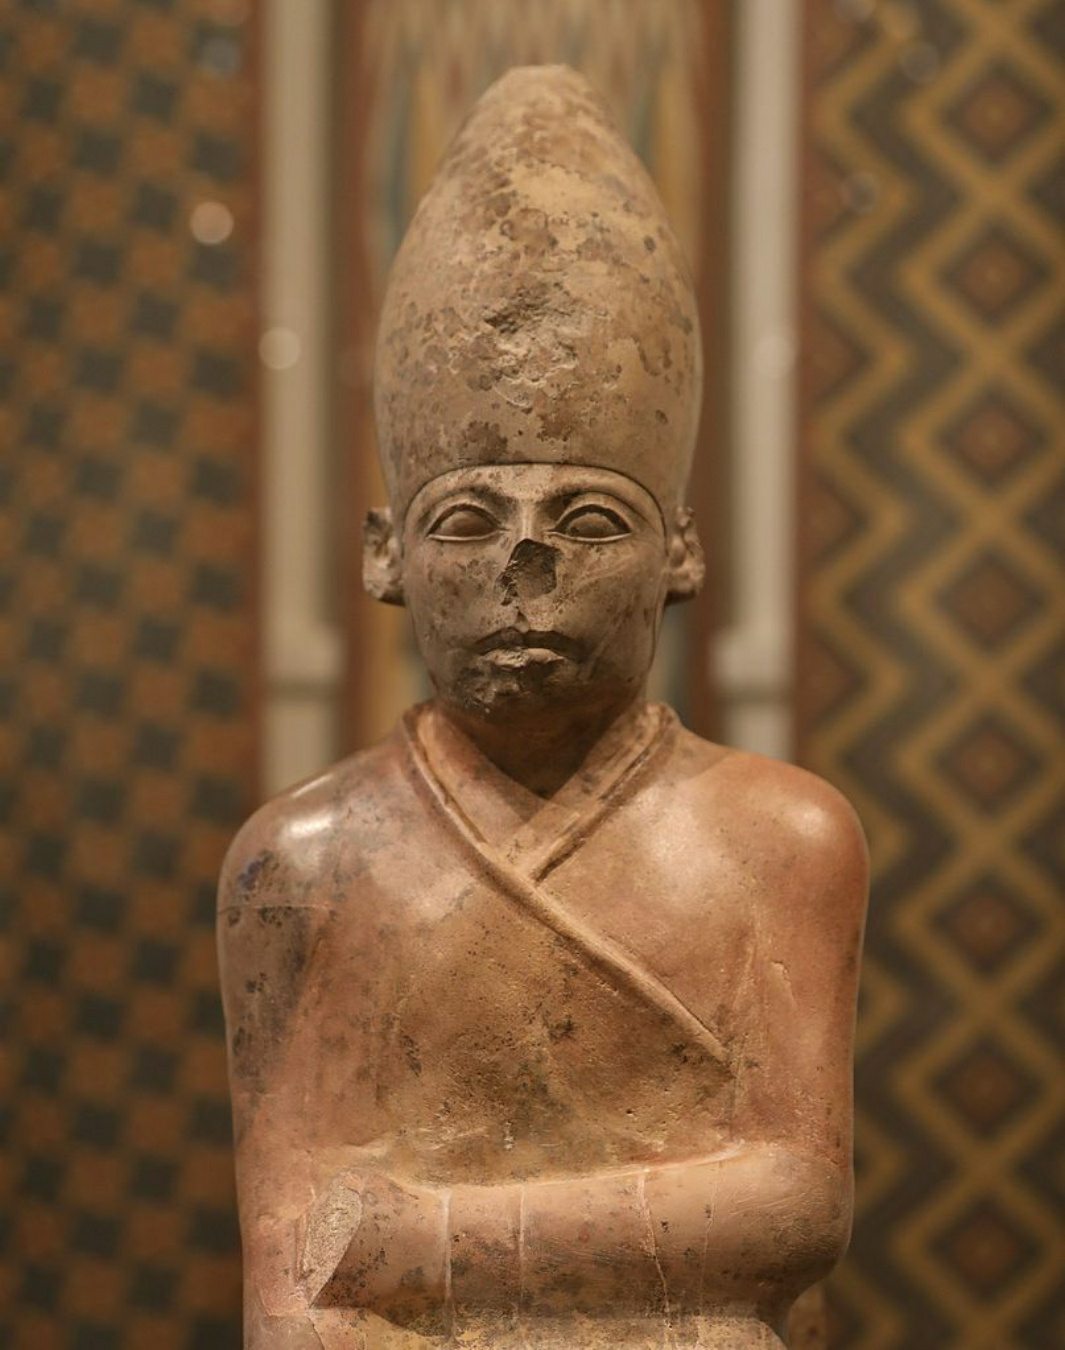 มรดกที่สูญหายของฟาโรห์ "ที่ไม่ใช่มนุษย์": ใครคือยักษ์ใหญ่ของอียิปต์โบราณ? 1